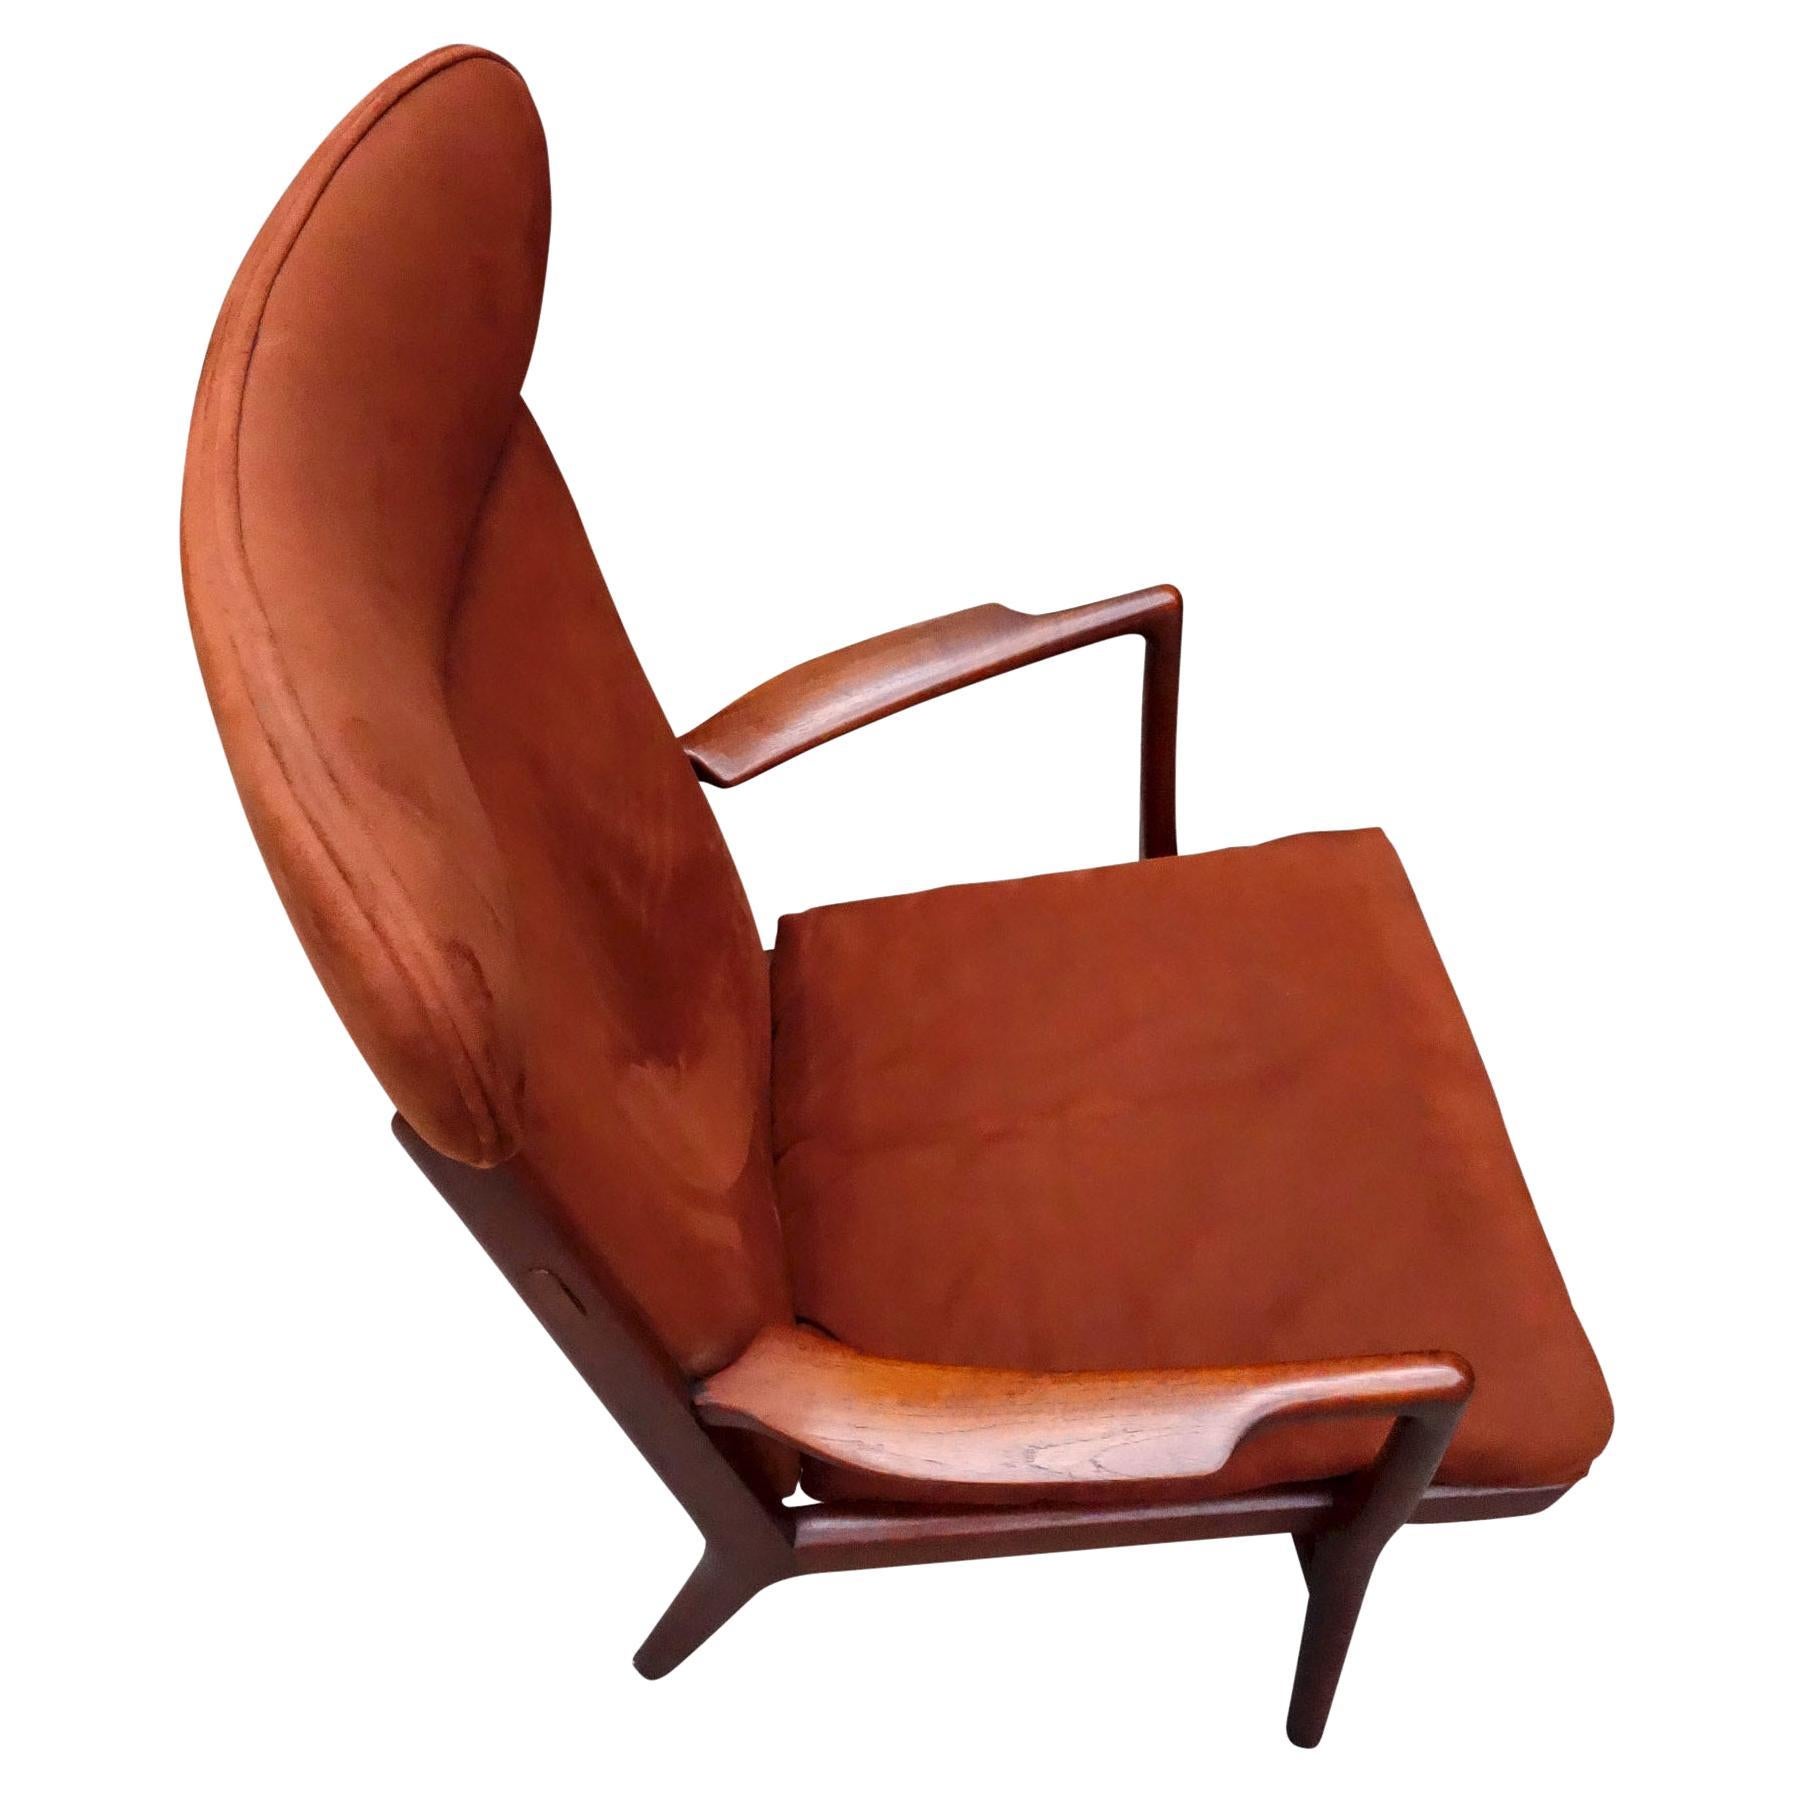 Pour votre condition, voici une chaise longue incroyablement confortable de Hans Wegner. Modèle AP-15 (A.P volé) importé par George Tanier. Ce modèle rare de chaise est en bois de teck avec une patine d'origine étonnante. L'excellent travail